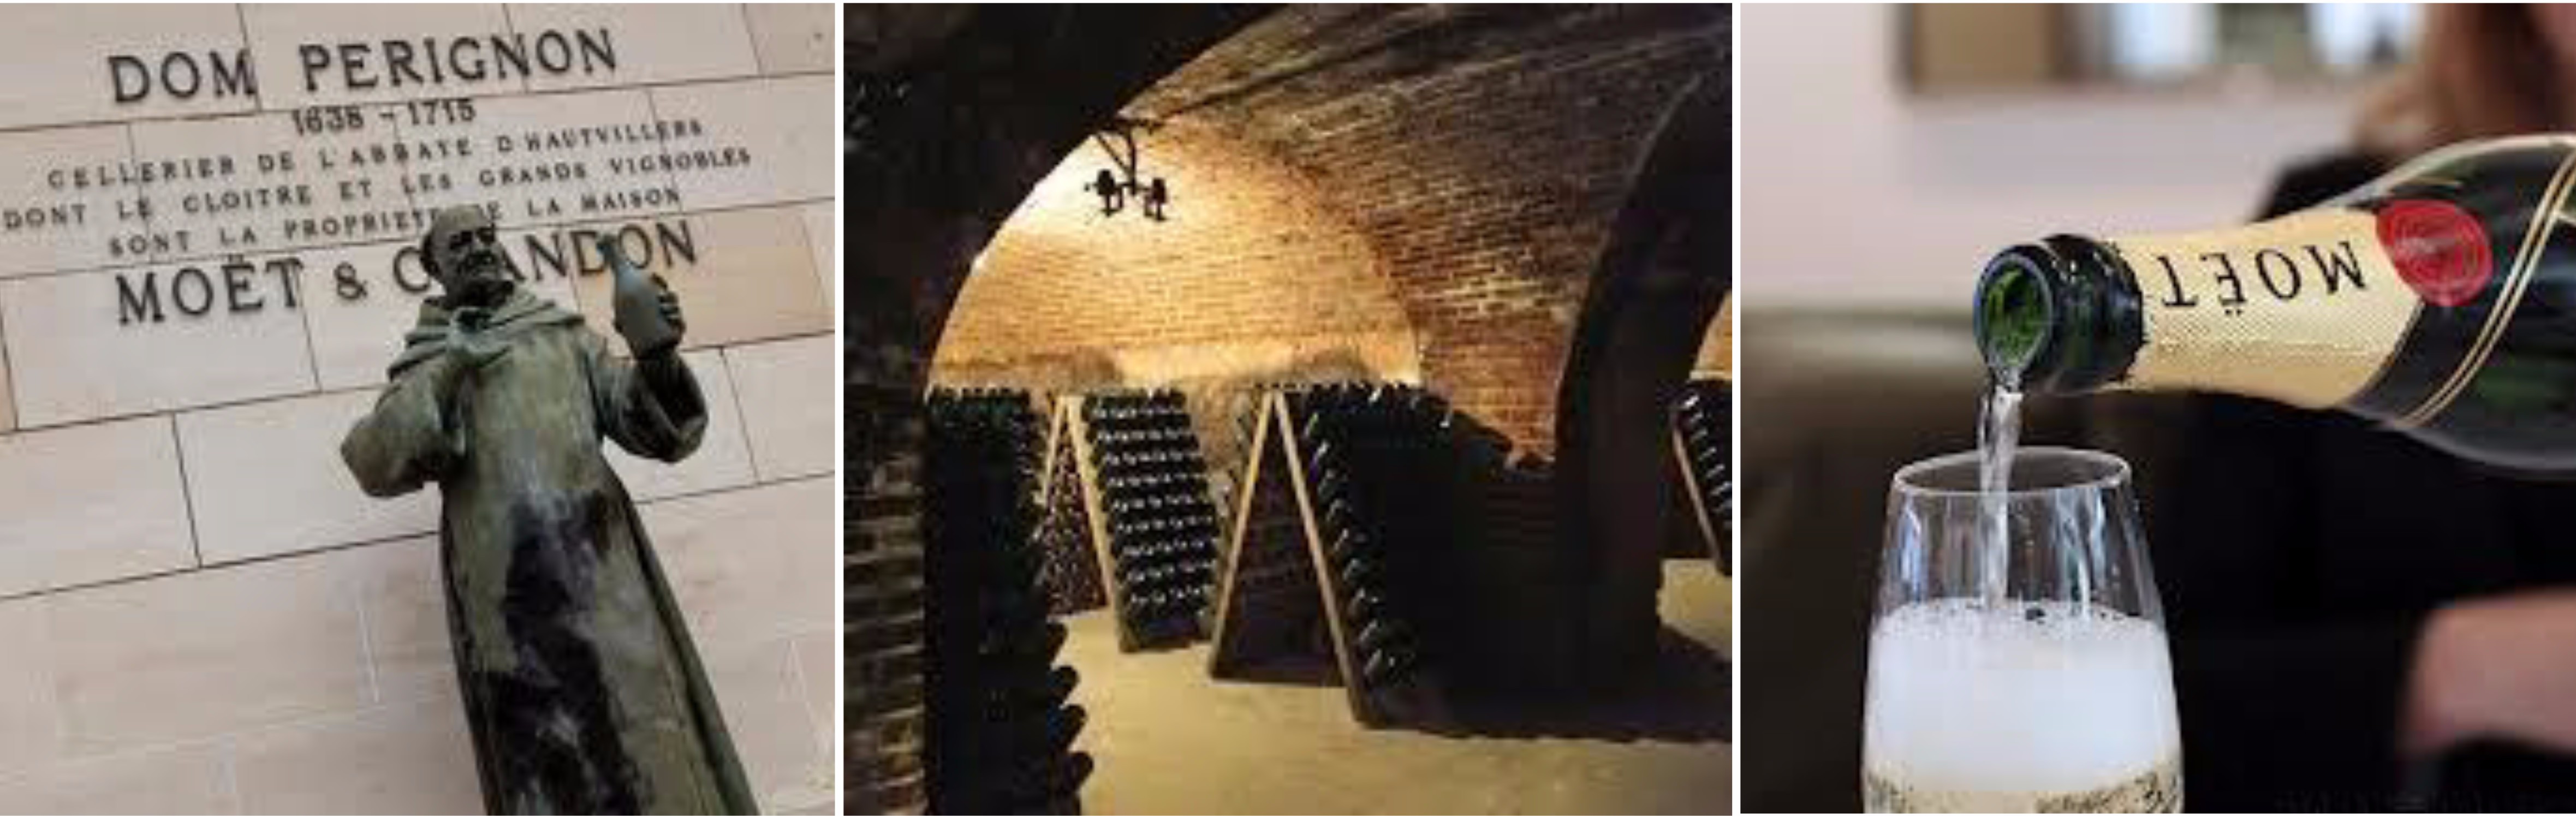 ทัวห์ – เอเพอเนย์ – ไวน์ชาโตว์ของ Moët & Chandon –  แรงส์ –  	มหาวิหารแซ็งต์เรมี่ – พระราชวังตัวน์ - 2